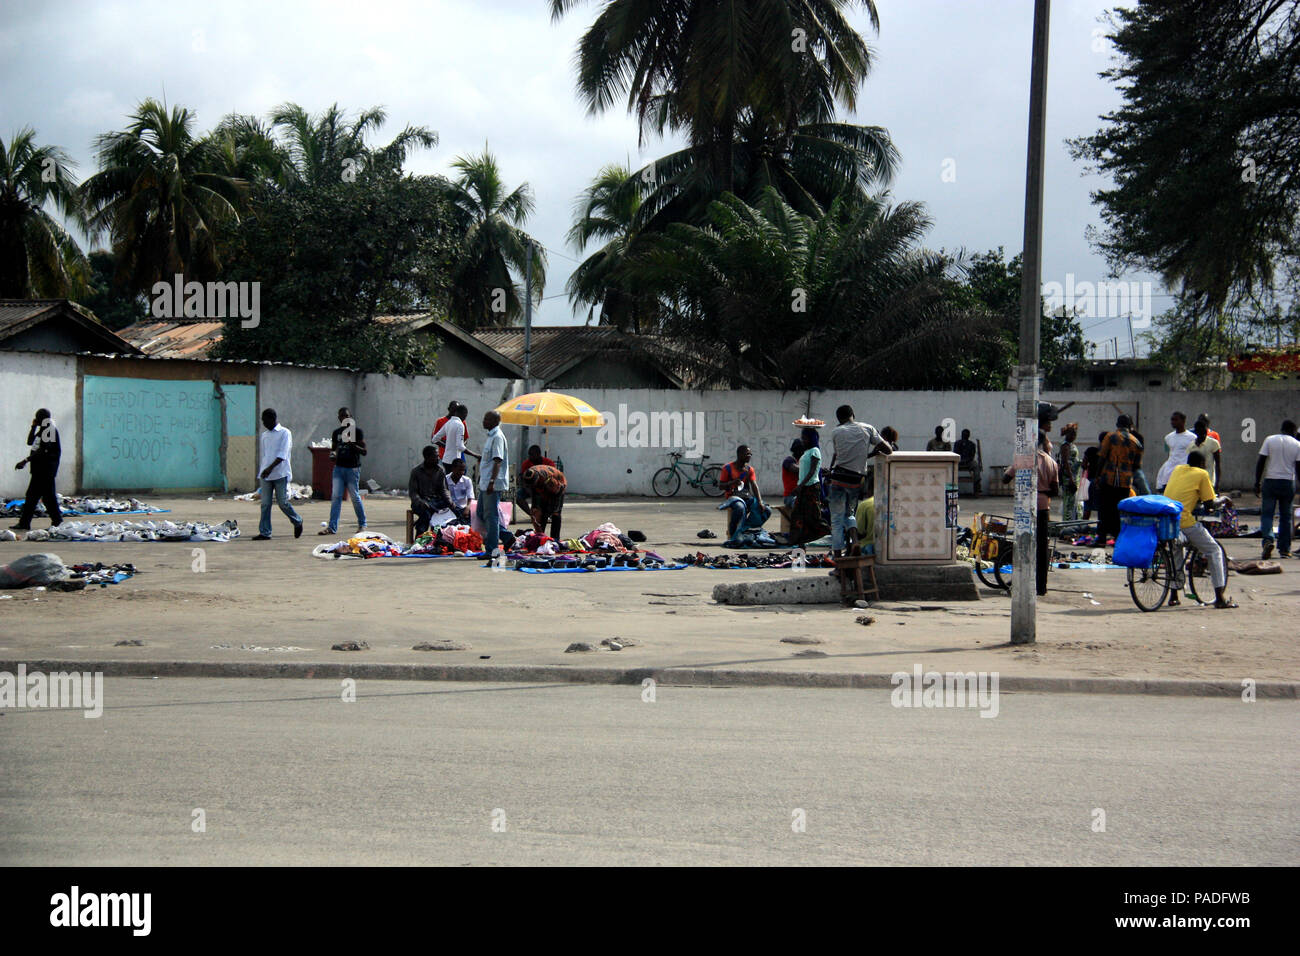 Les gens à l'aide d'un vide l'immobilier pour vendre des choses sur une sorte de marché à Abidjan, Côte d'Ivoire Banque D'Images